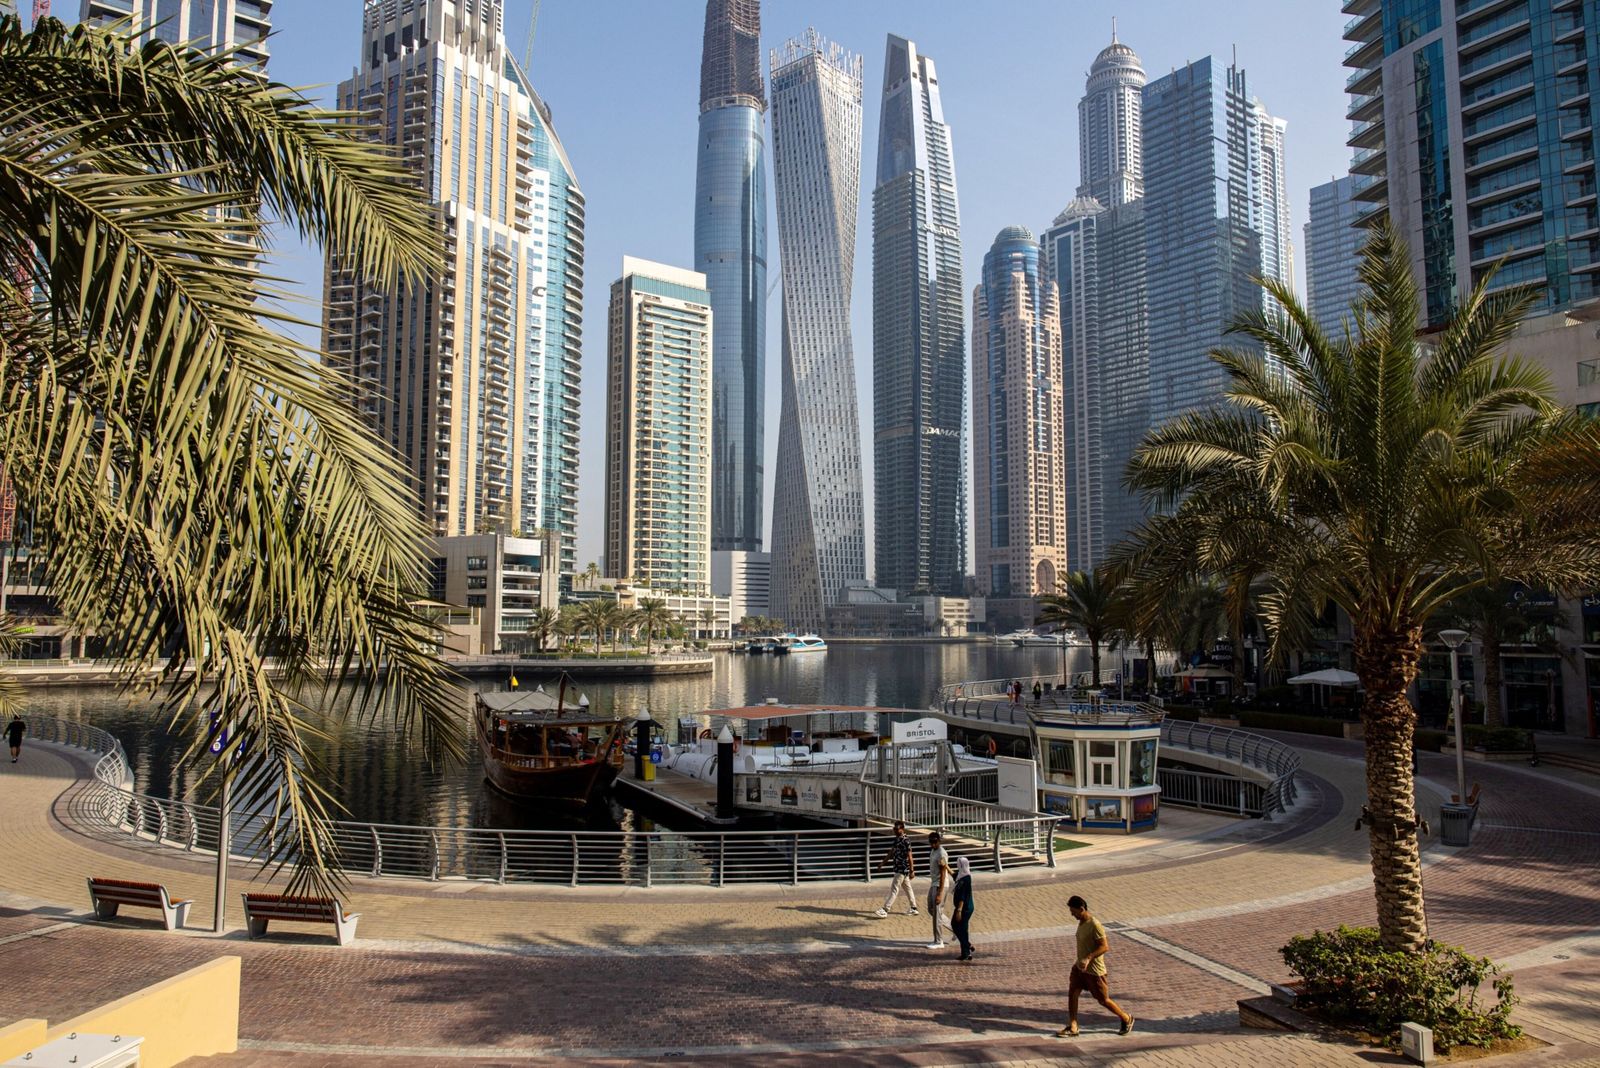 سوق العقارات الرائجة في دبي تستعد للتباطؤ